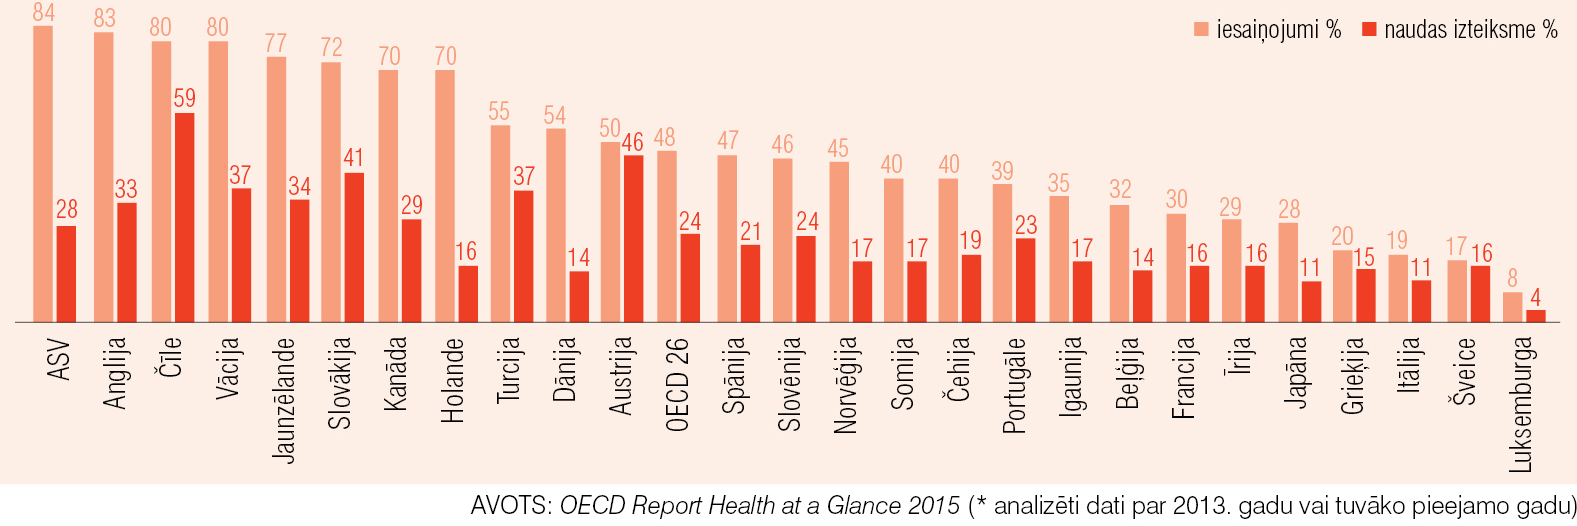 Ģenērisko zāļu tirgus daļa OECD valstīs (naudas izteiksmē un iesaiņojumos)*